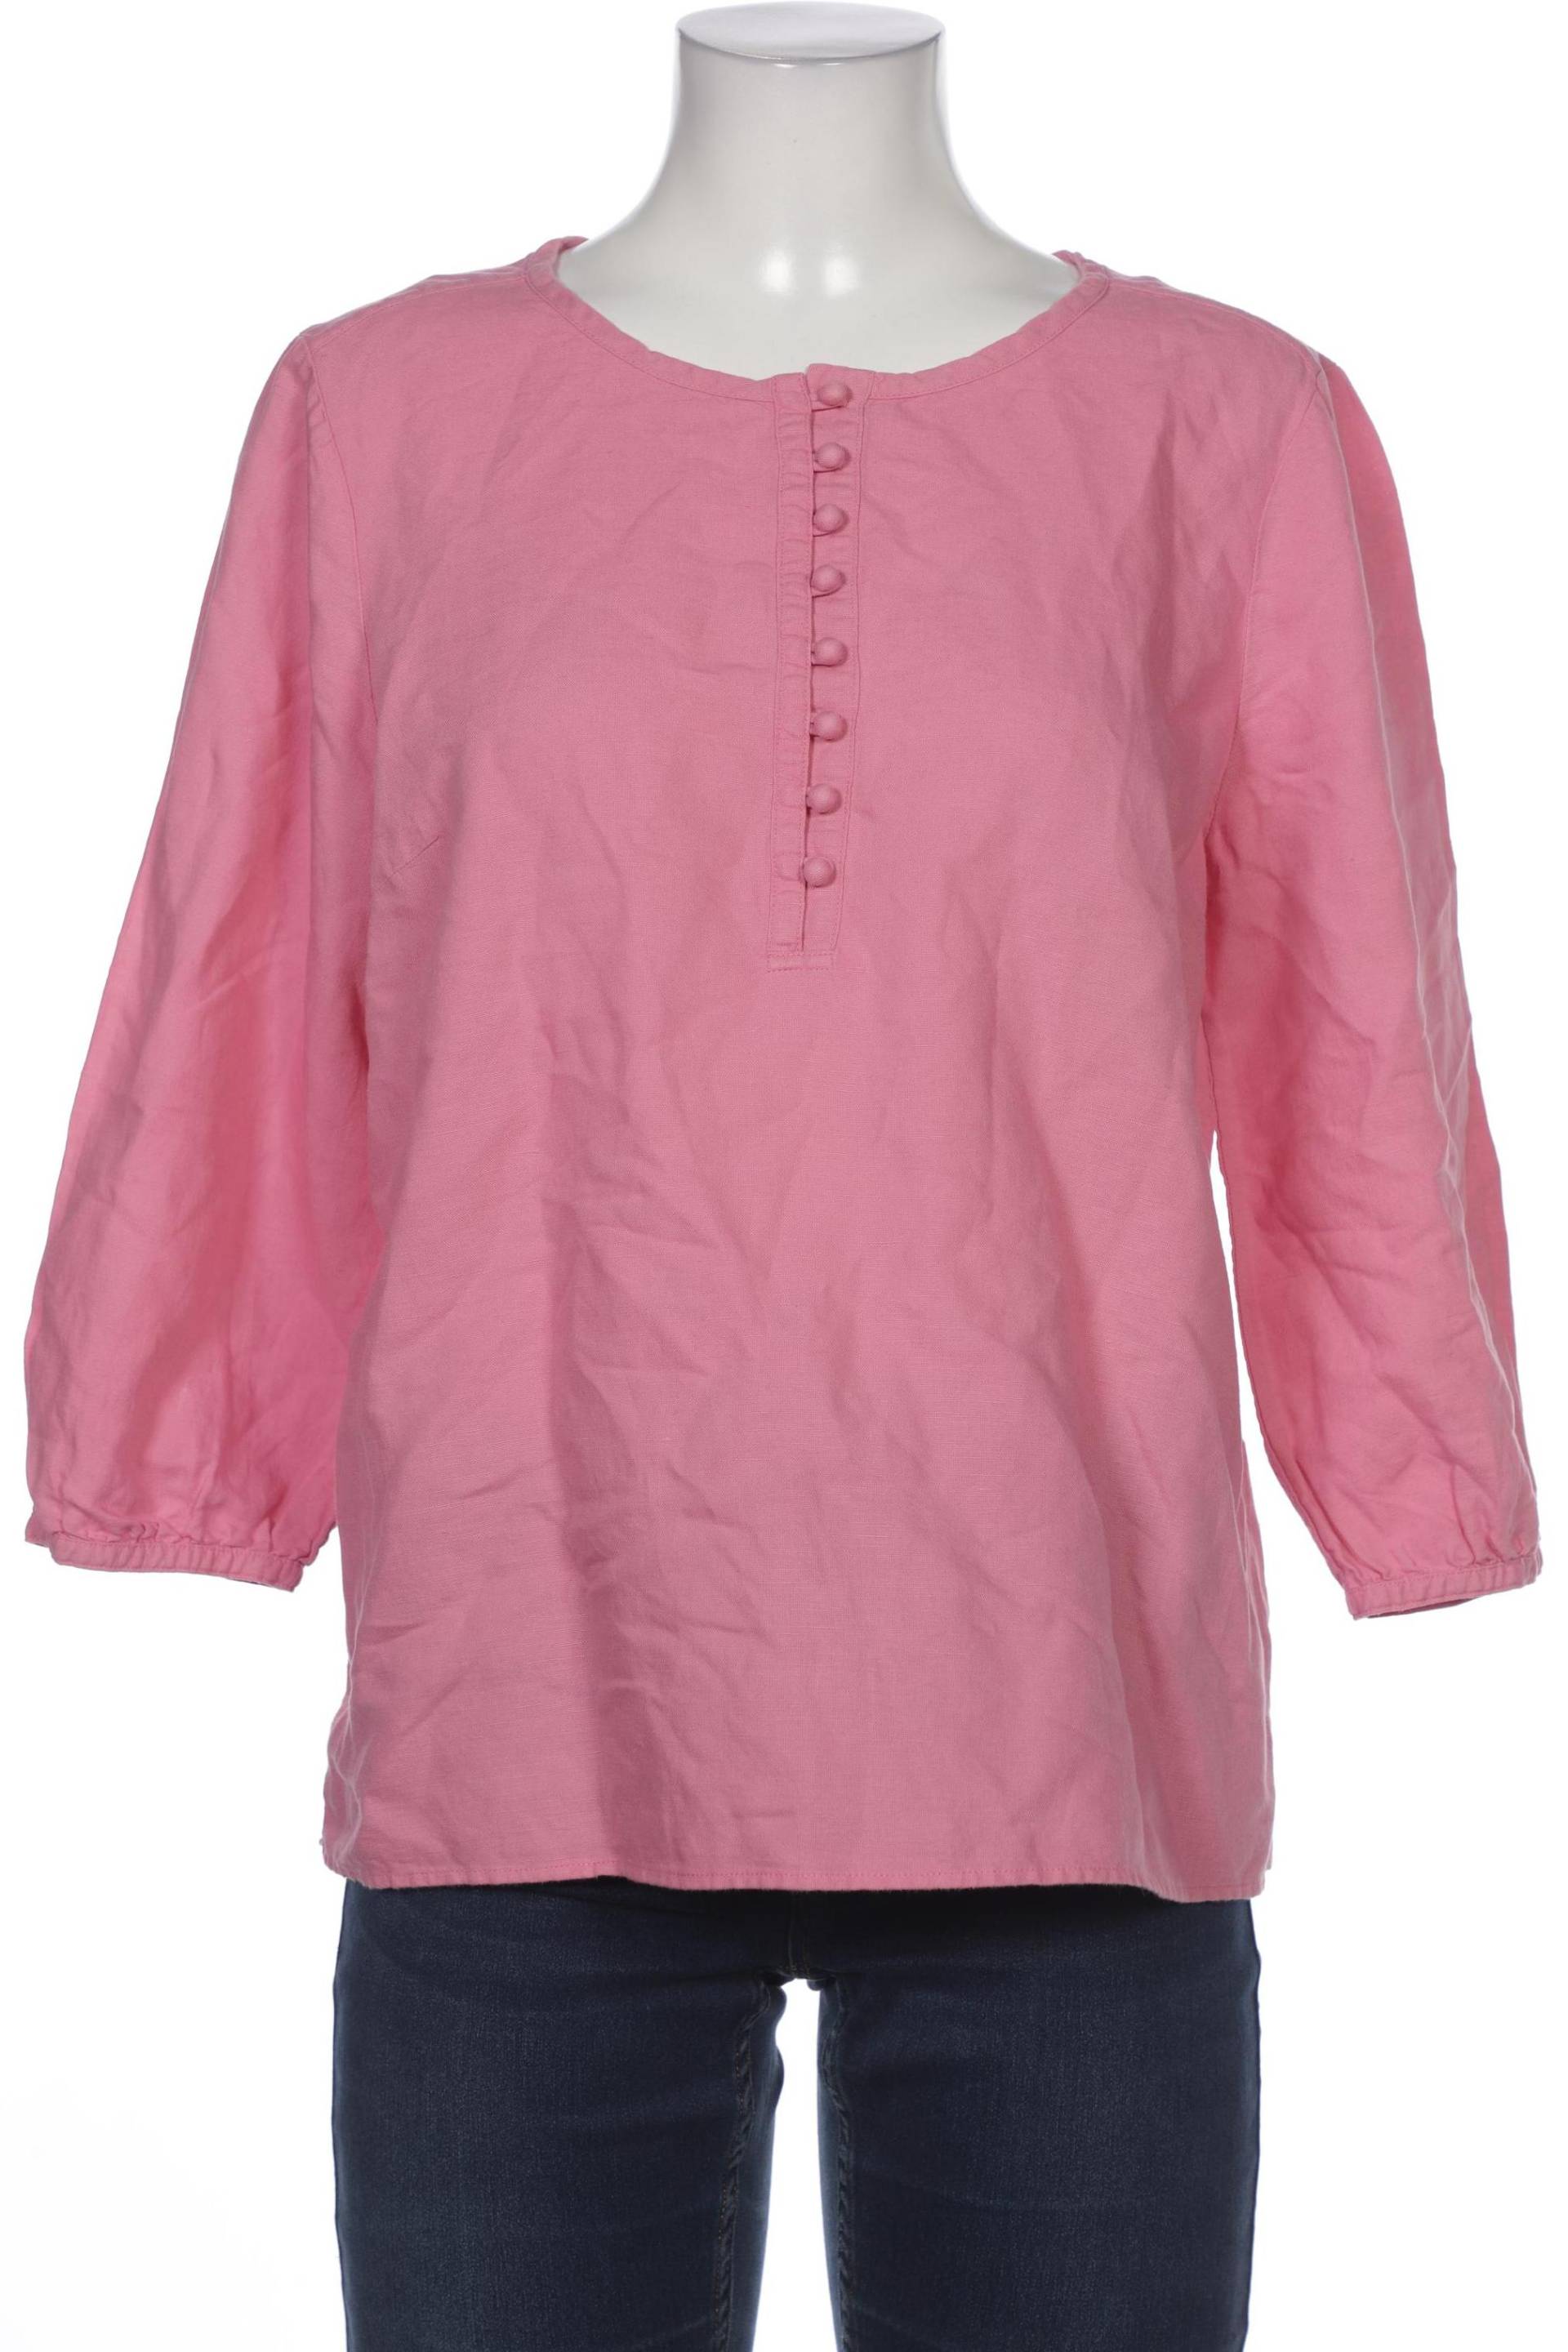 Boden Damen Bluse, pink, Gr. 40 von Boden